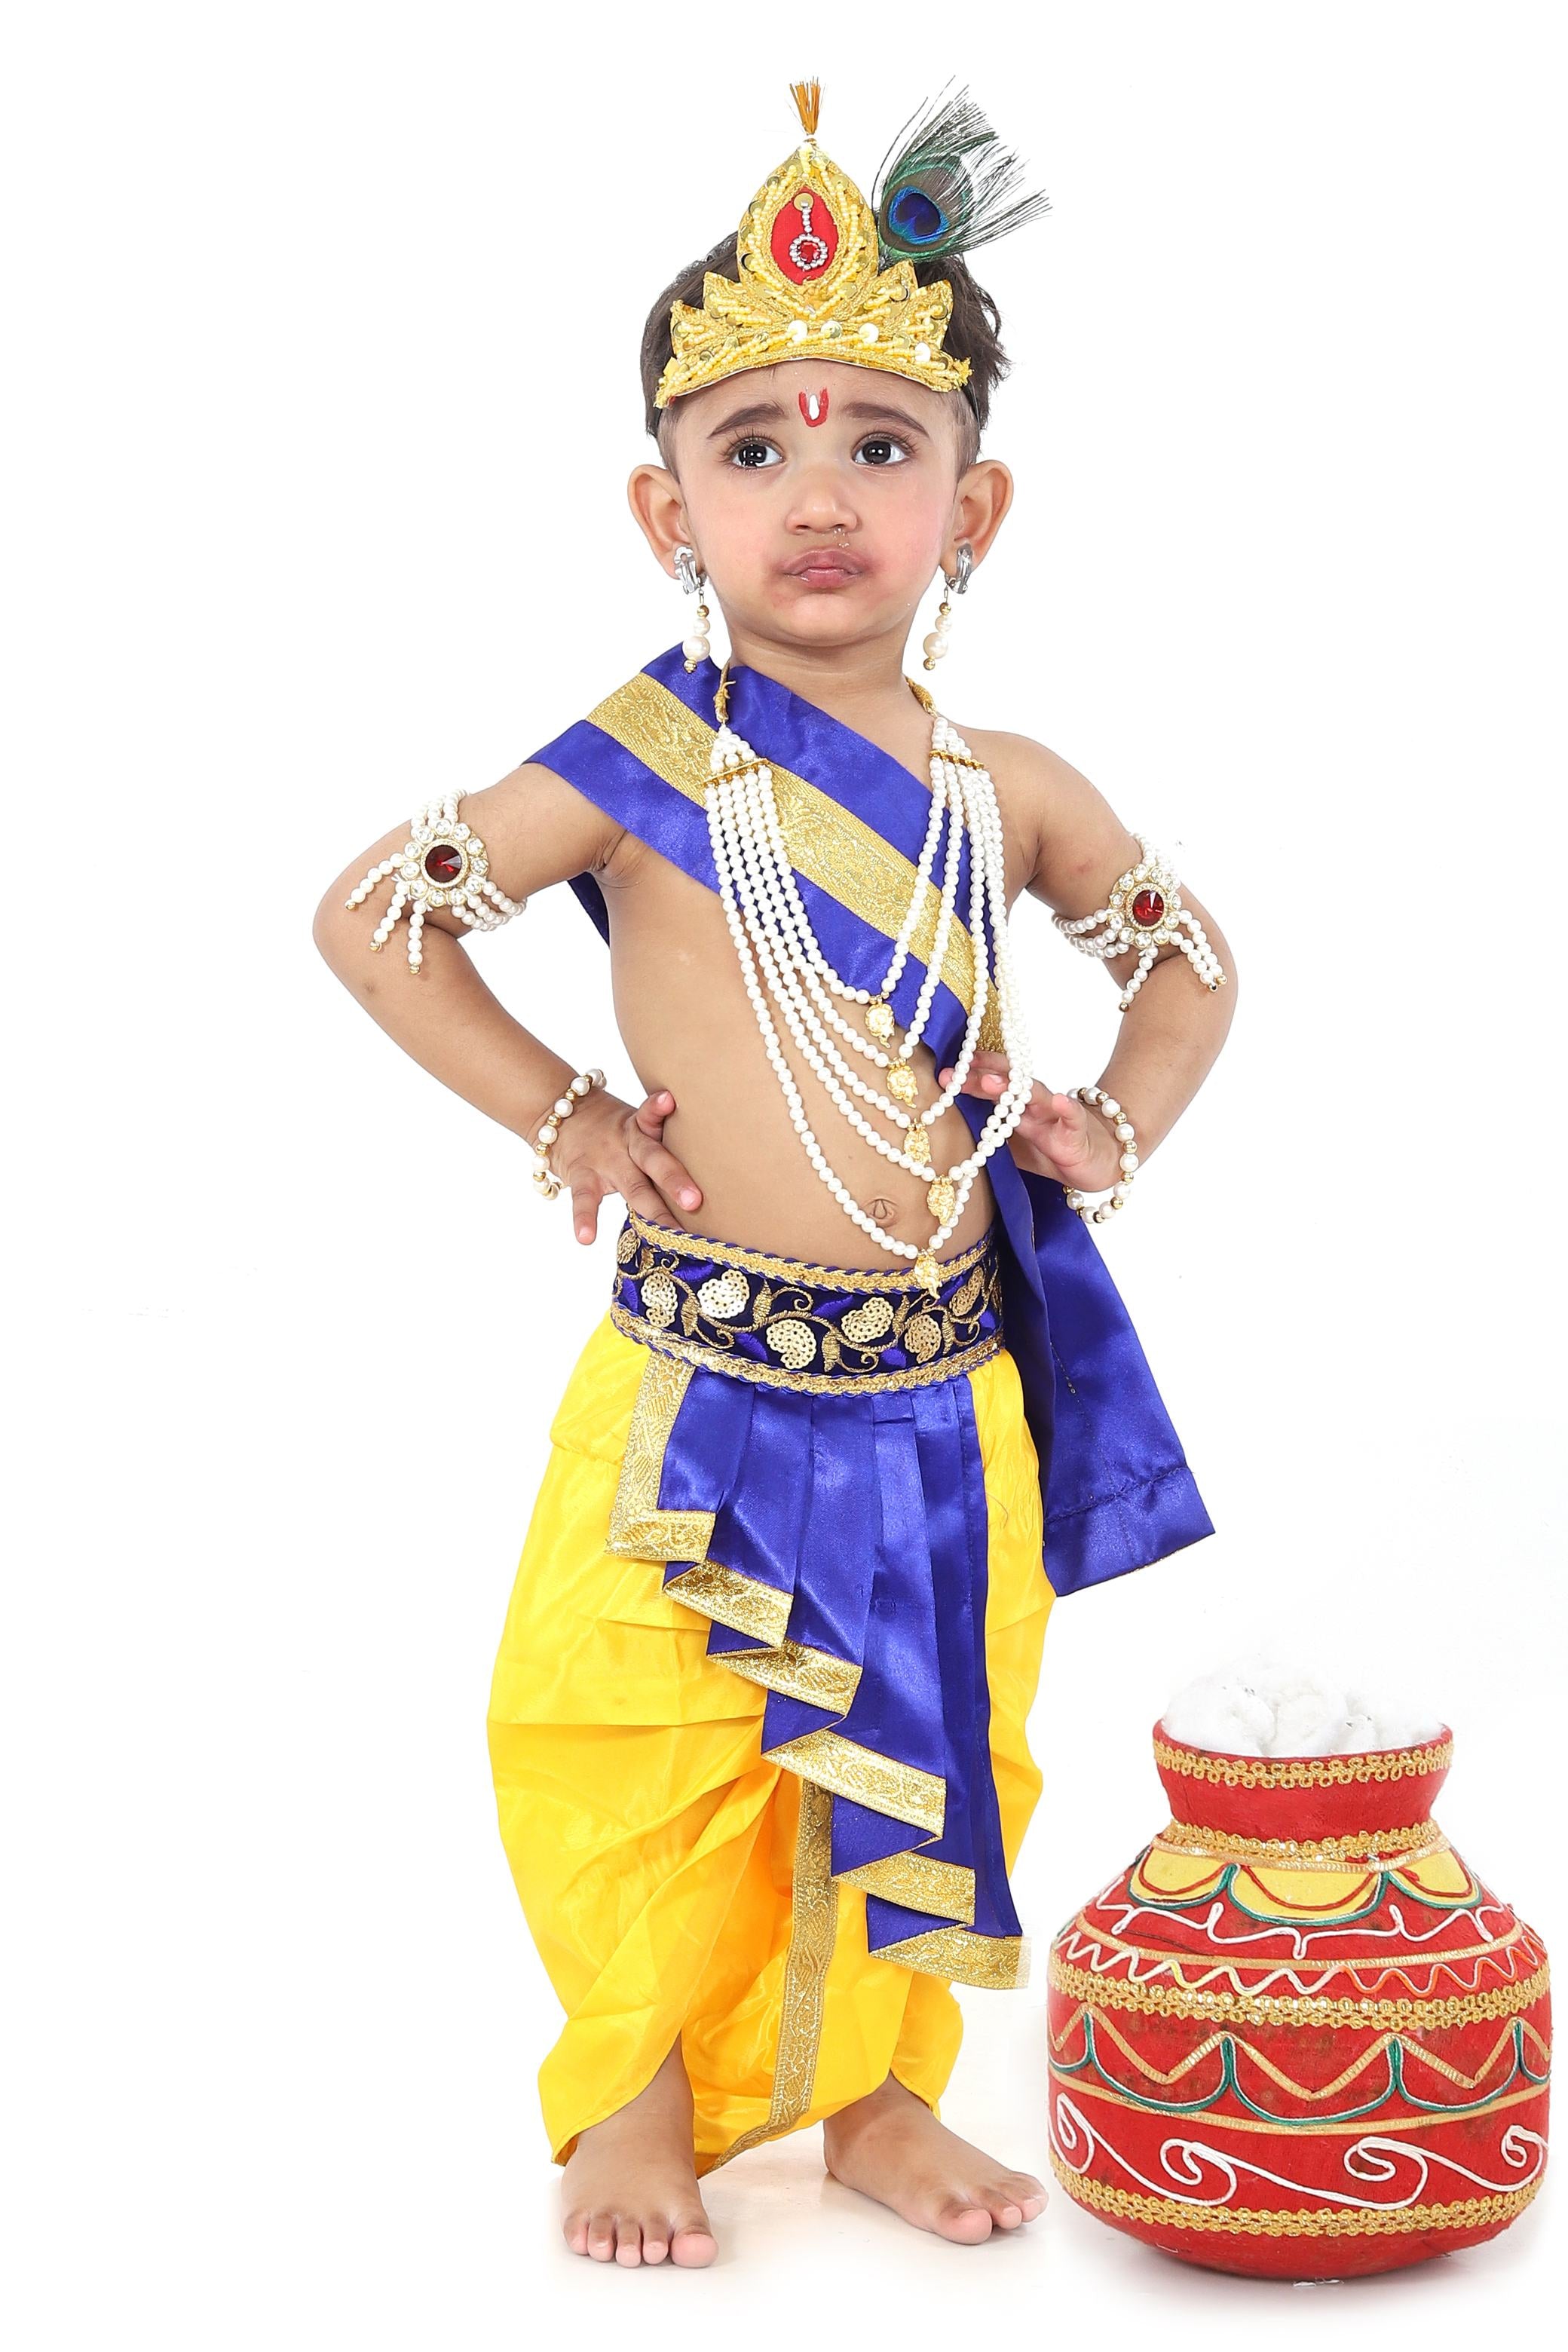 Fancy Dresses Baby Krishna For Janmashtami Mythological Character Costume  US | eBay